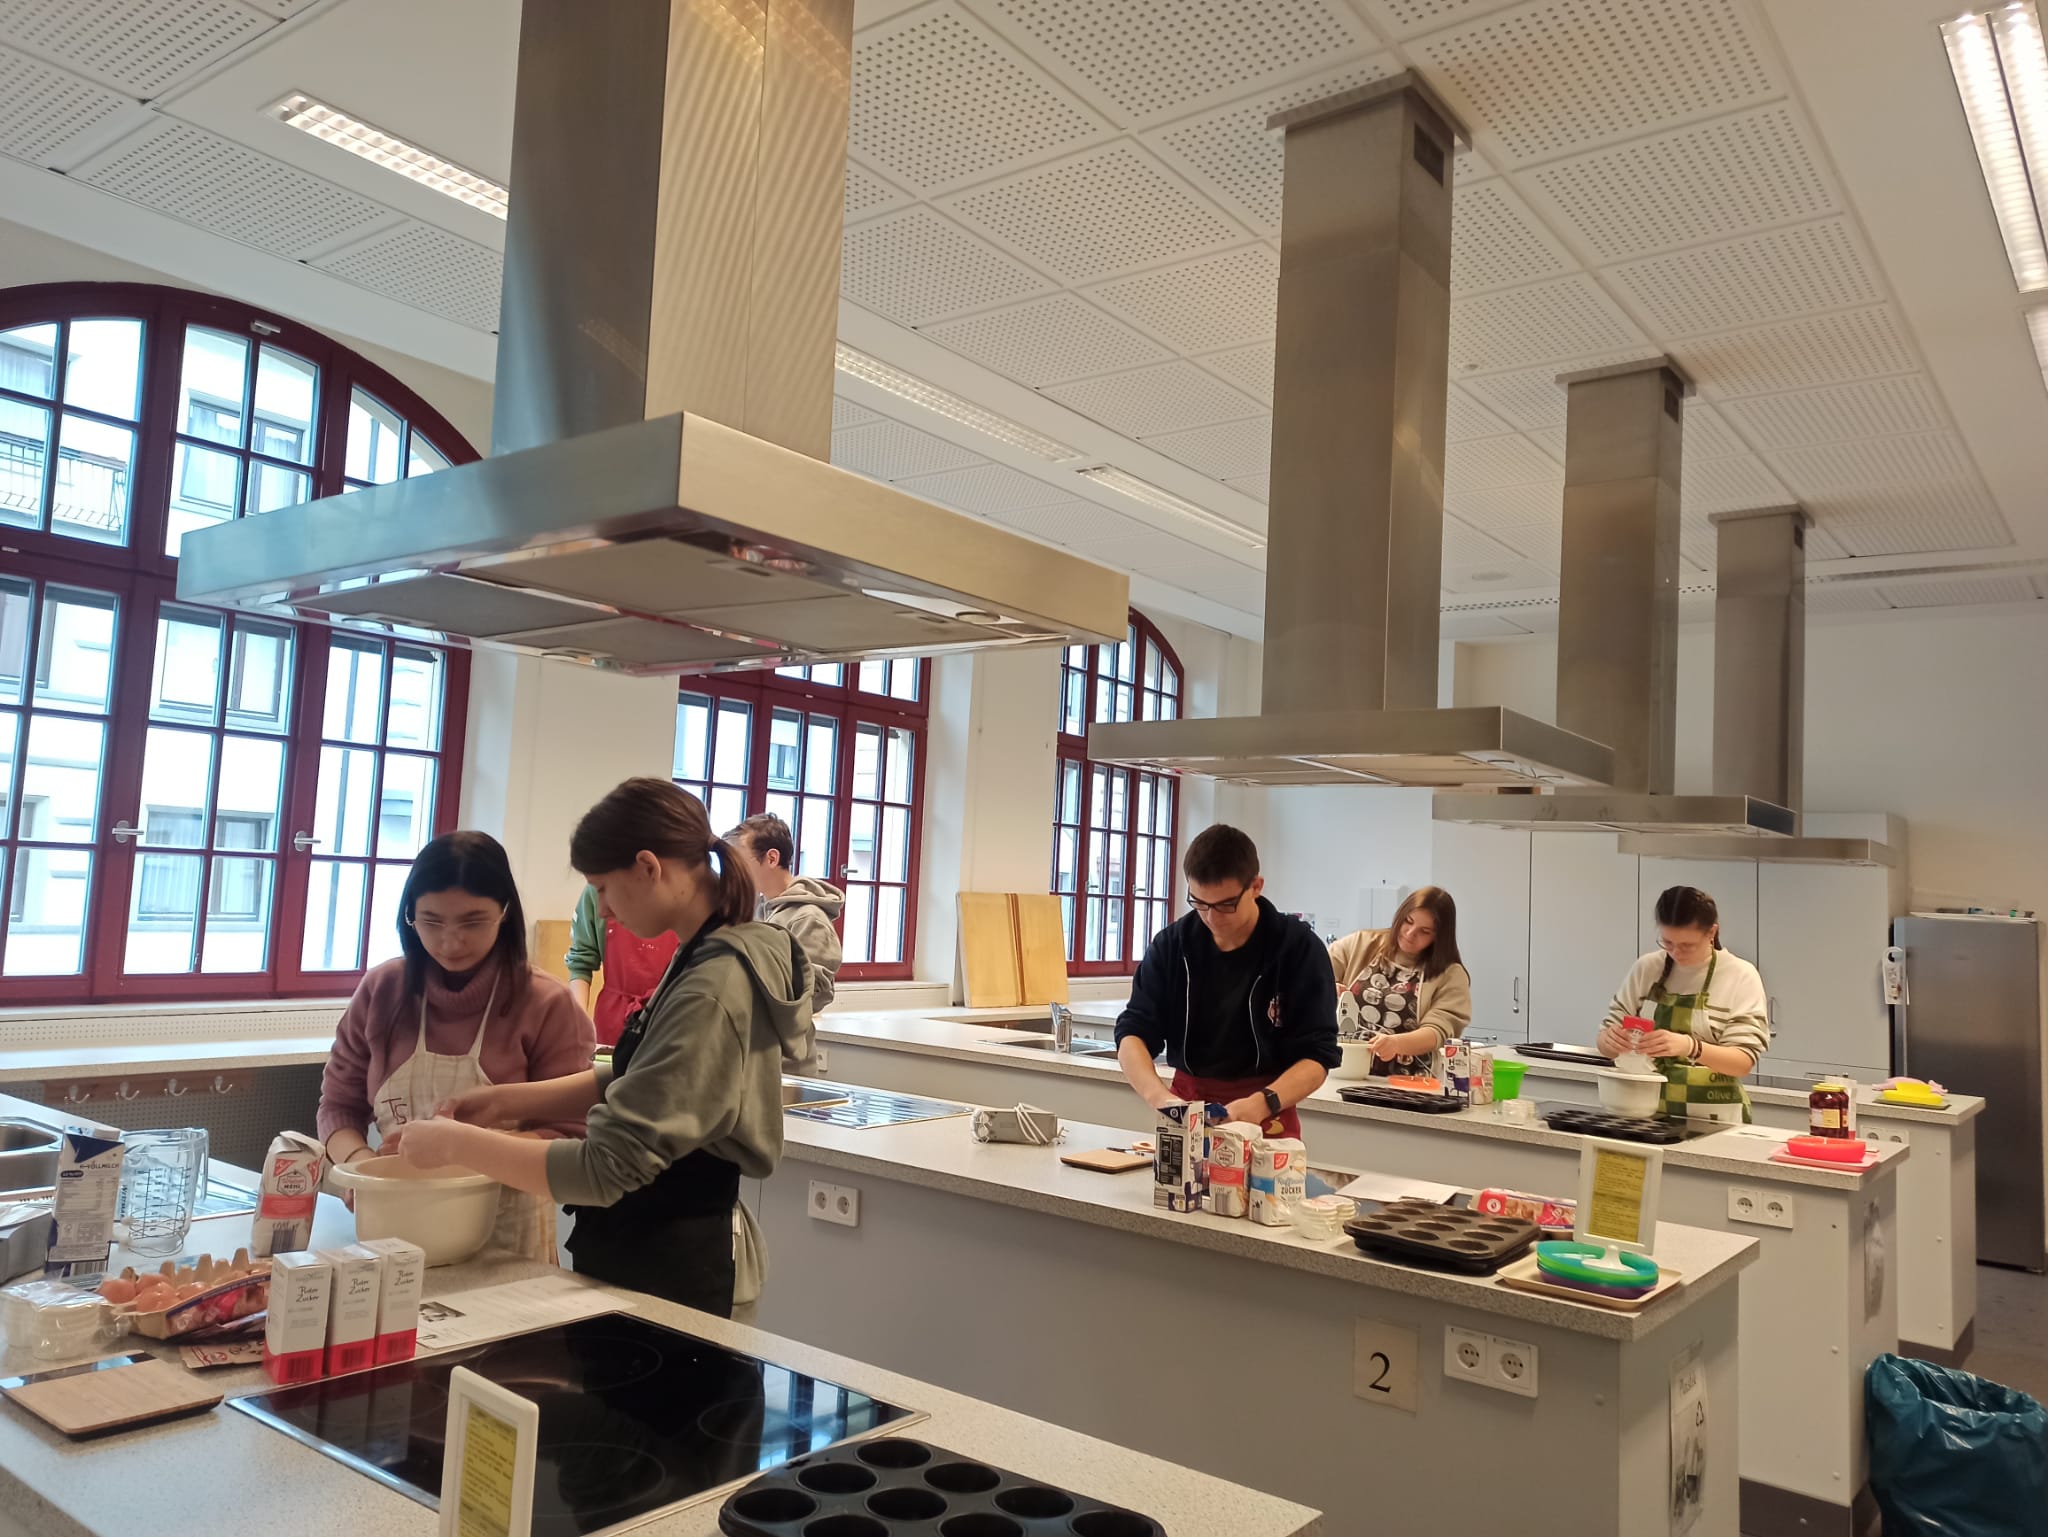 Schüler backen Muffins in der Schulküche